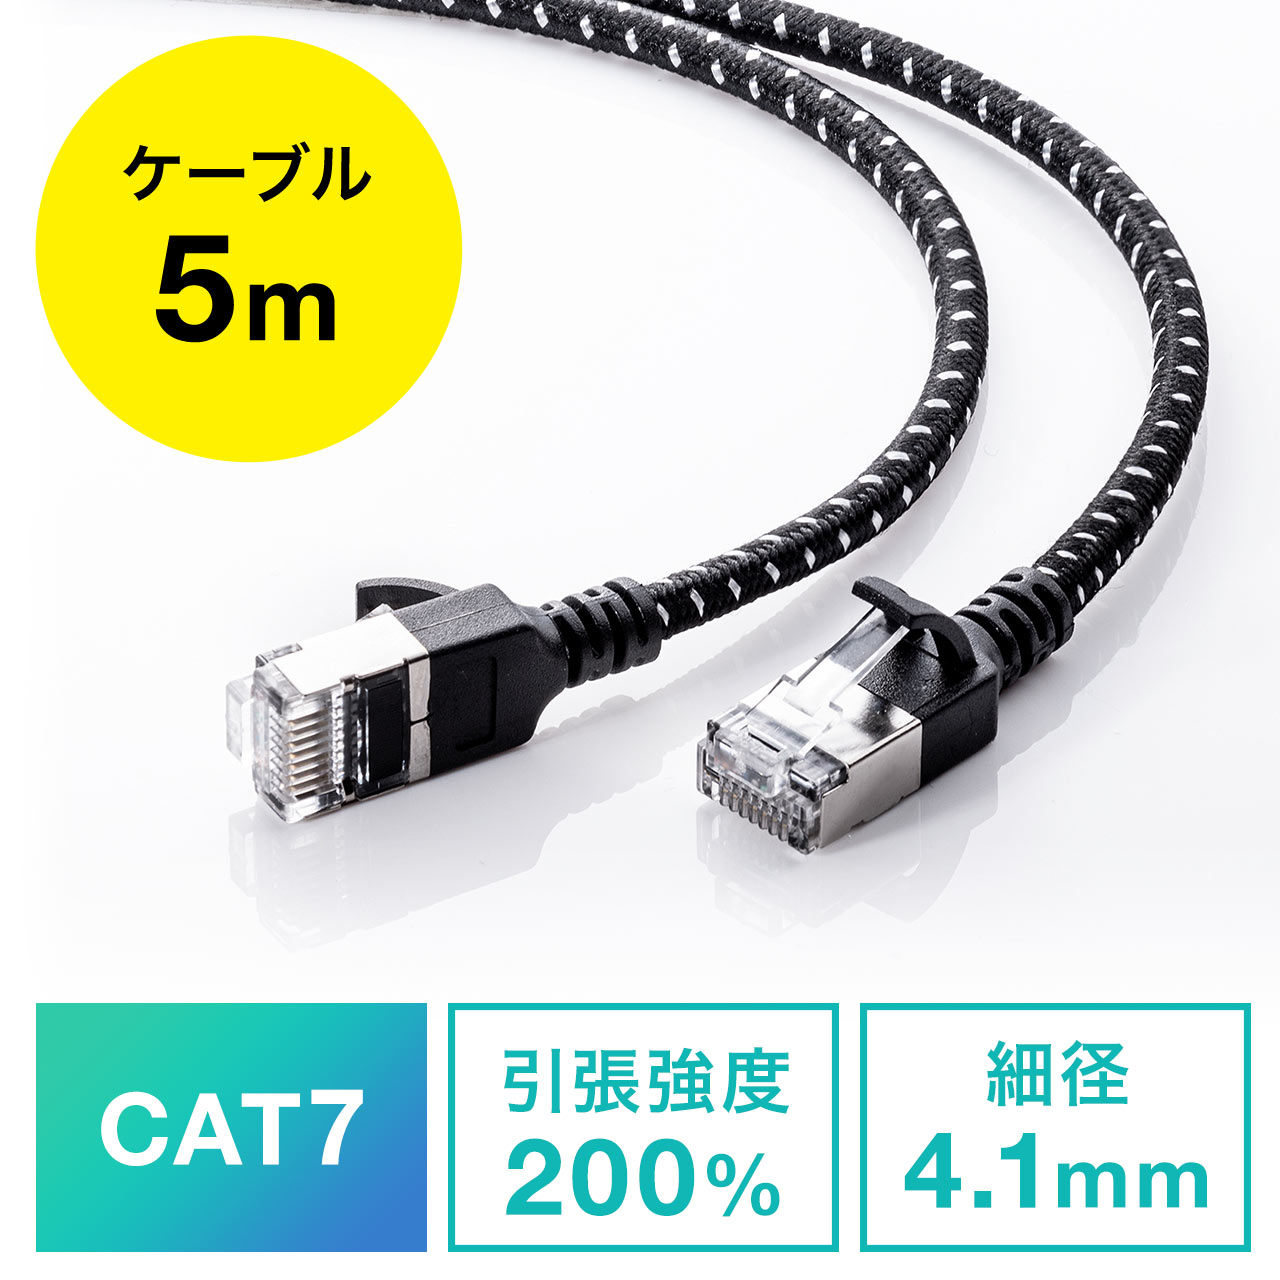 サンワサプライ CAT7細径メッシュLANケーブル (5m) - PCケーブル・コネクタ